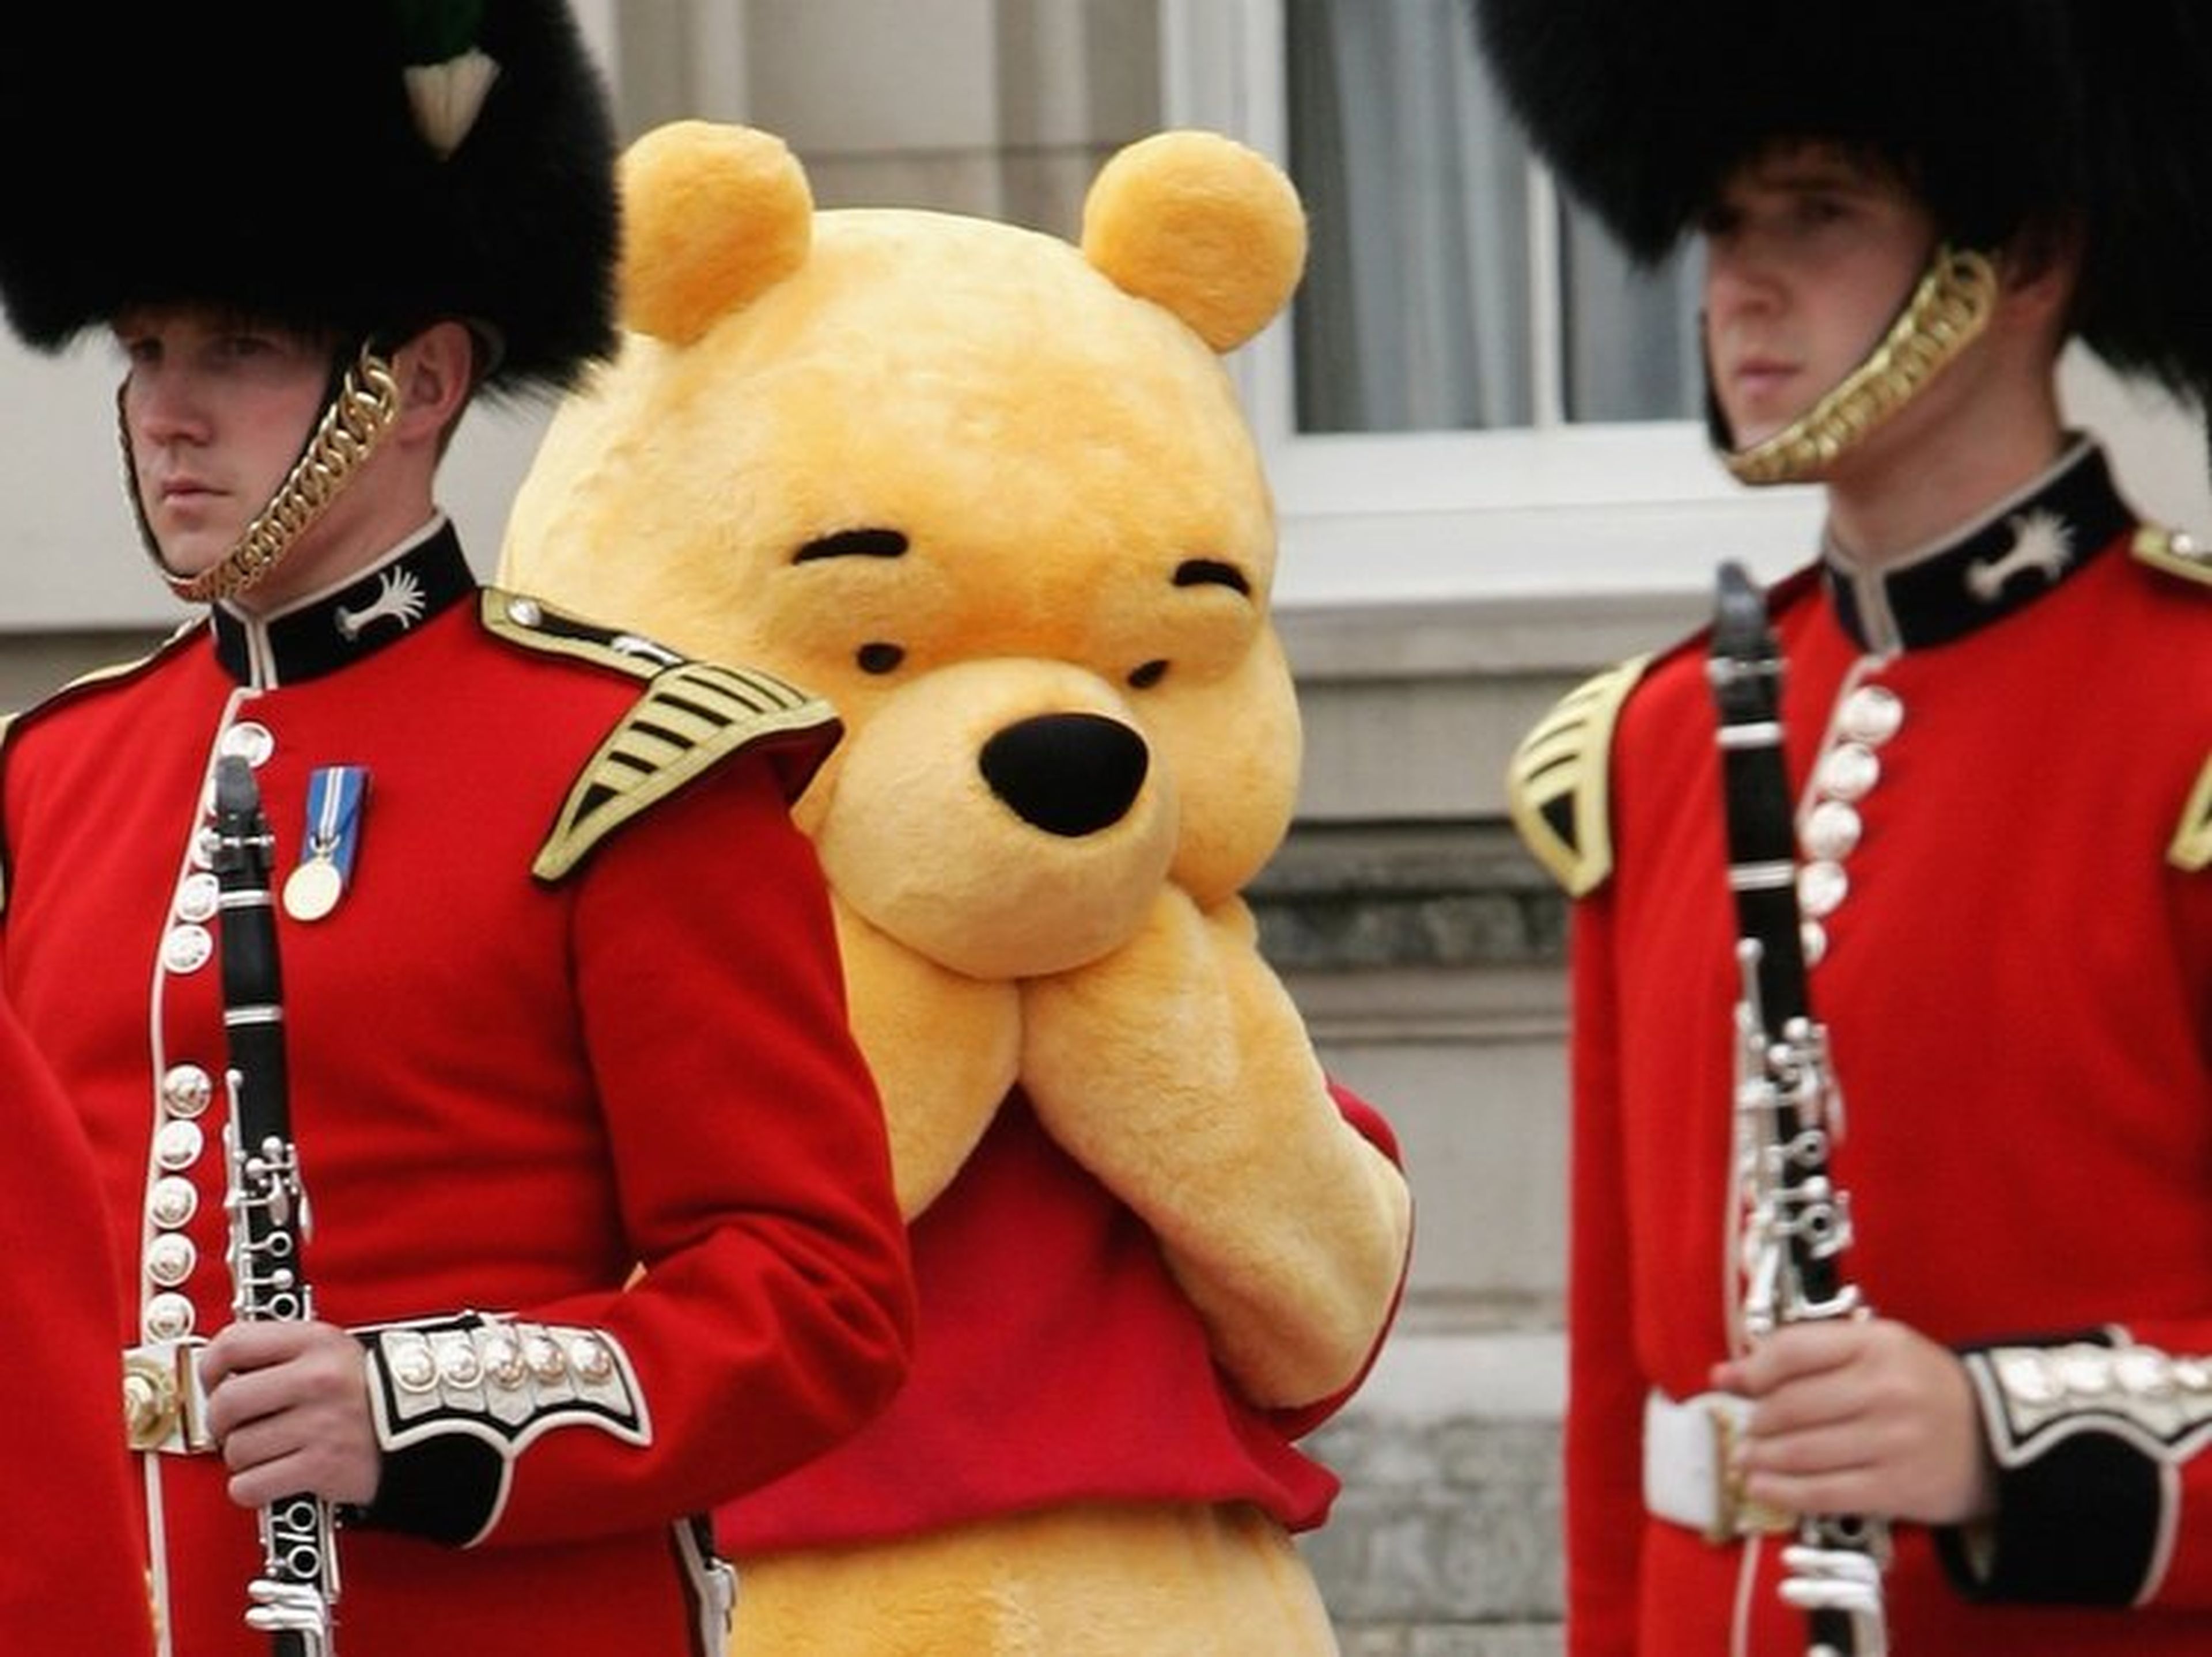 Una persona disfrazada de Winnie the Pooh se esconde tras dos soldados británicos